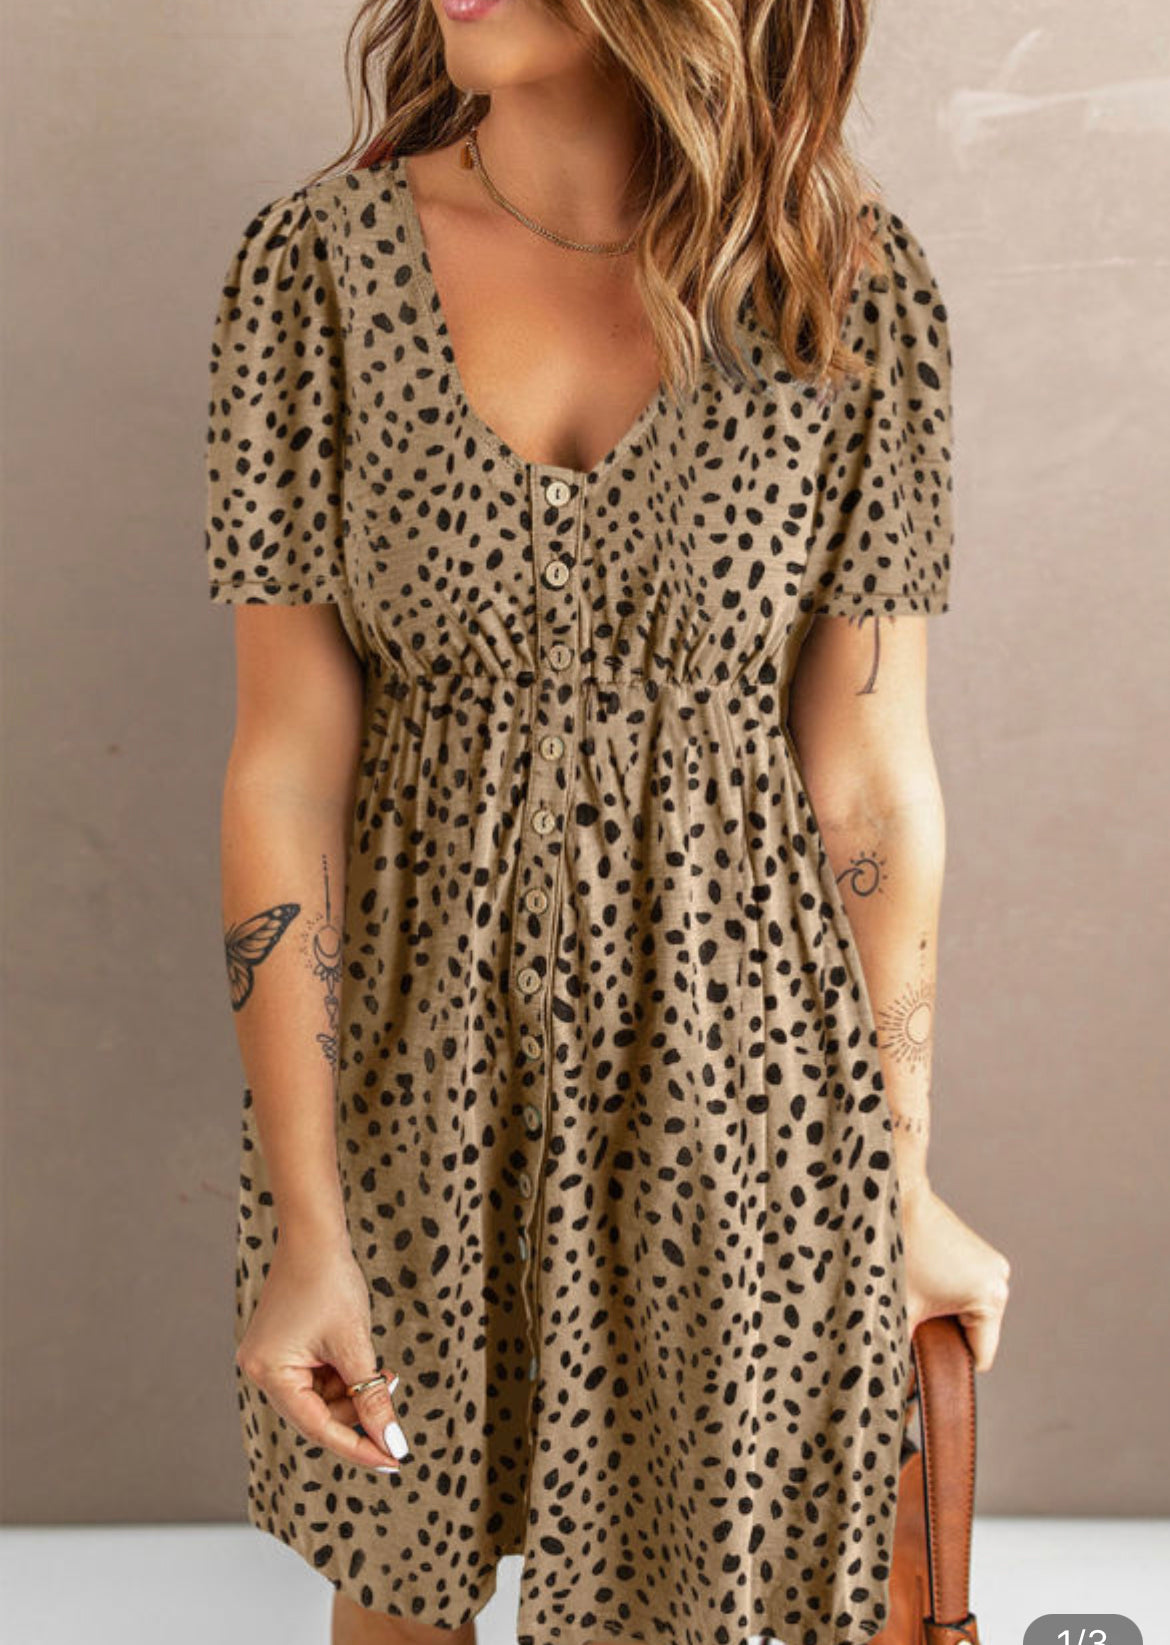 Dainty leopard dress